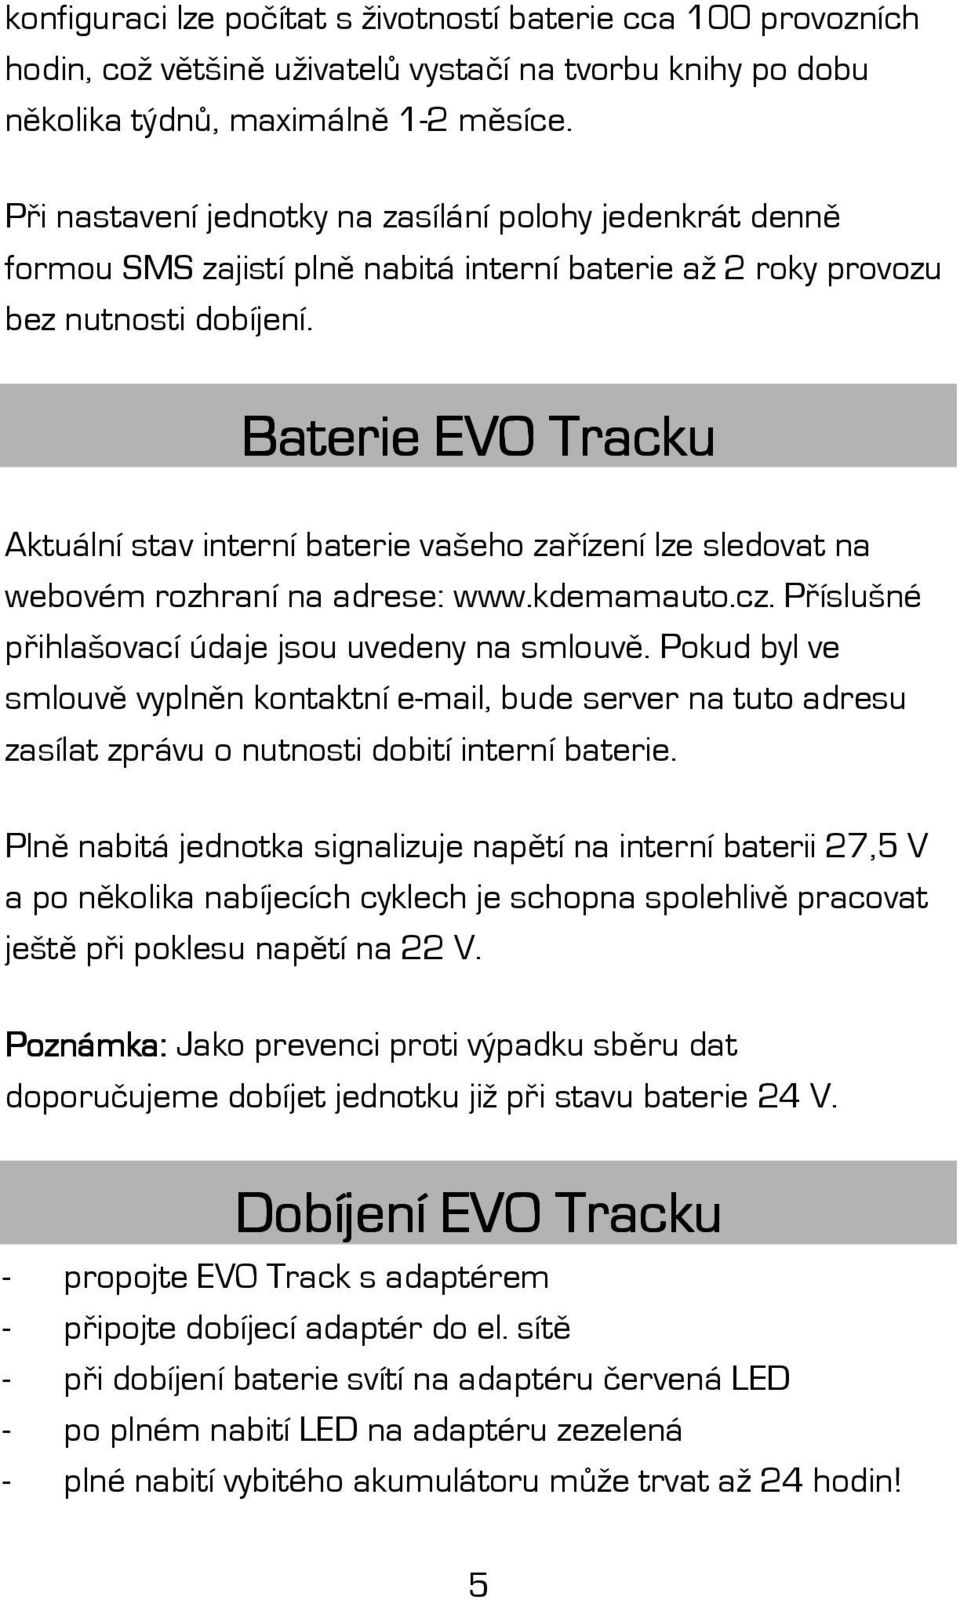 Baterie EVO Tracku Aktuální stav interní baterie vašeho zařízení lze sledovat na webovém rozhraní na adrese: www.kdemamauto.cz. Příslušné přihlašovací údaje jsou uvedeny na smlouvě.